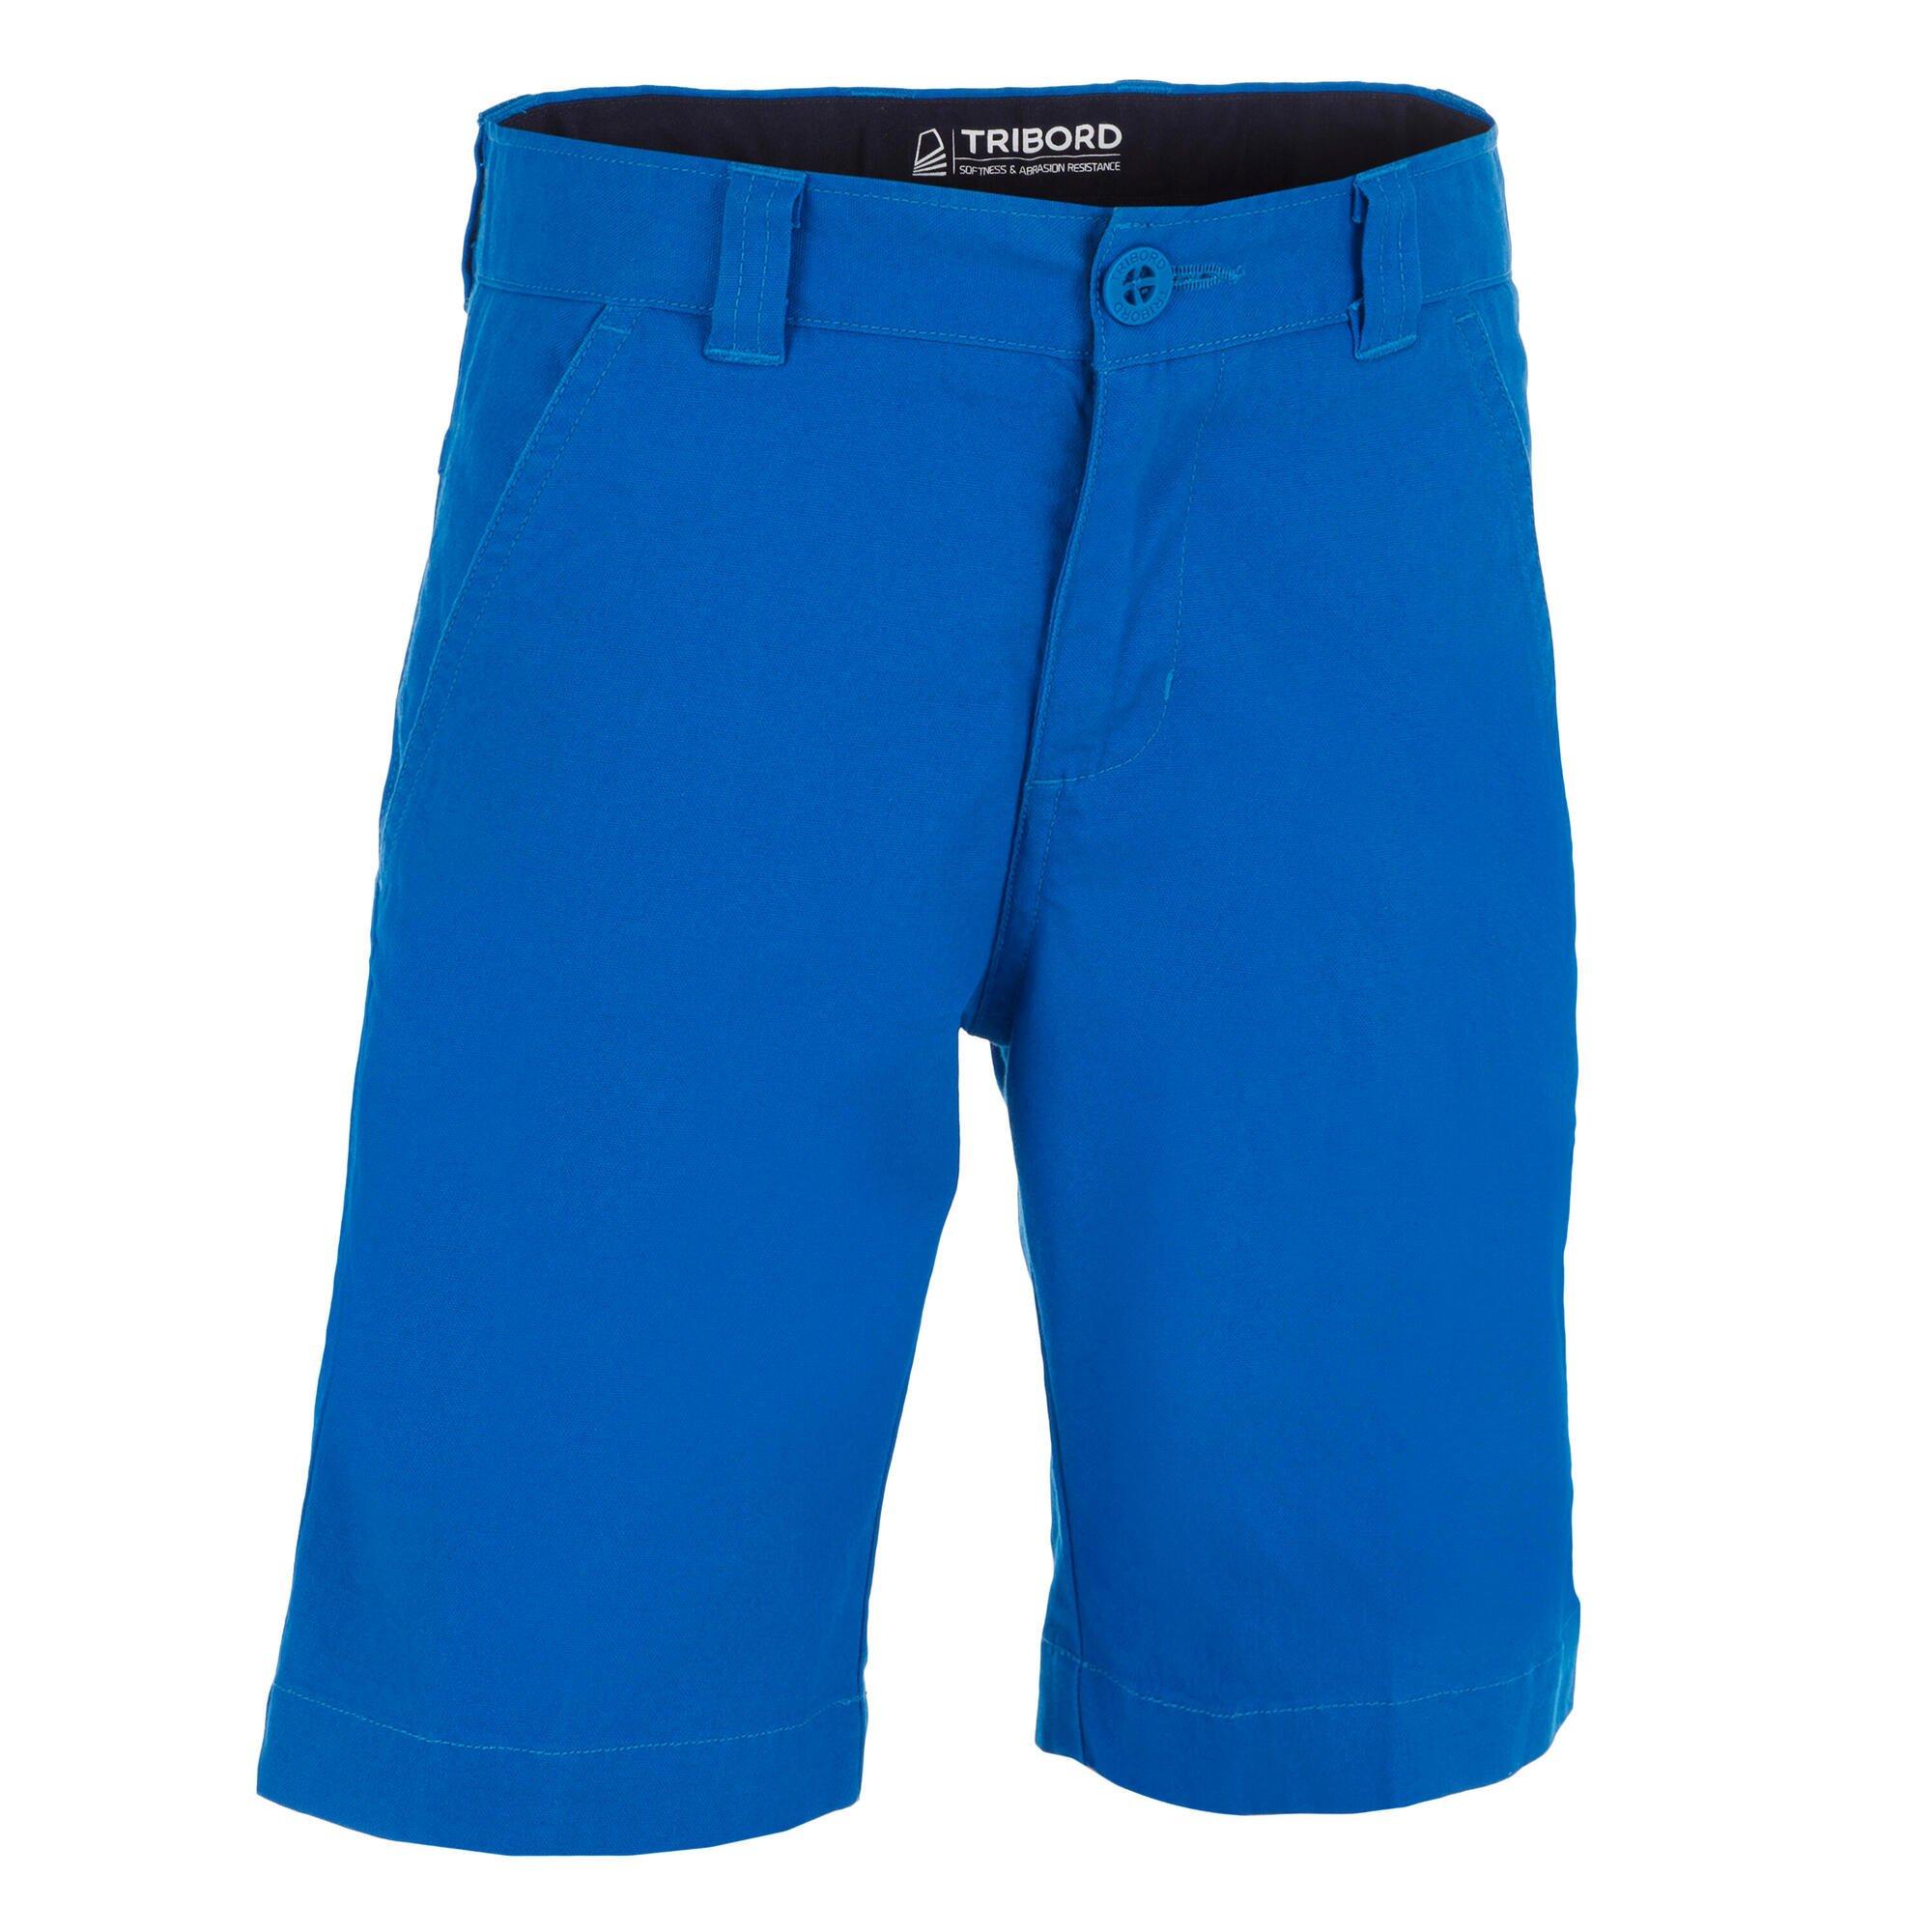 Парусные шорты-бермуды для мальчиков Decathlon Sailing 100 — яркие Tribord, синий